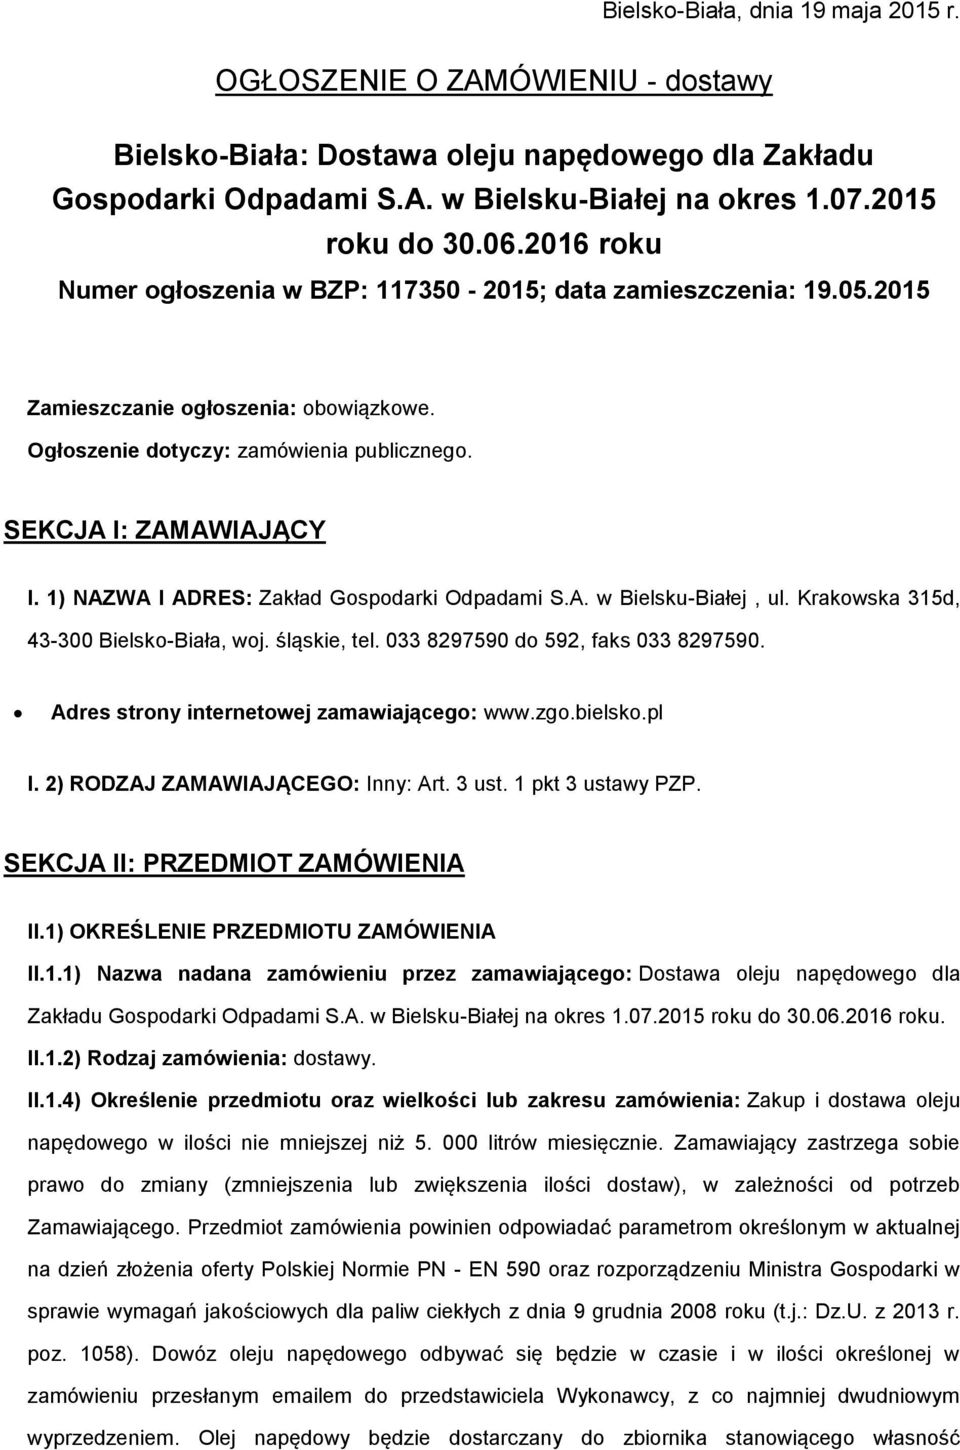 1) NAZWA I ADRES: Zakład Gspdarki Odpadami S.A. w Bielsku-Białej, ul. Krakwska 315d, 43-300 Bielsk-Biała, wj. śląskie, tel. 033 8297590 d 592, faks 033 8297590.